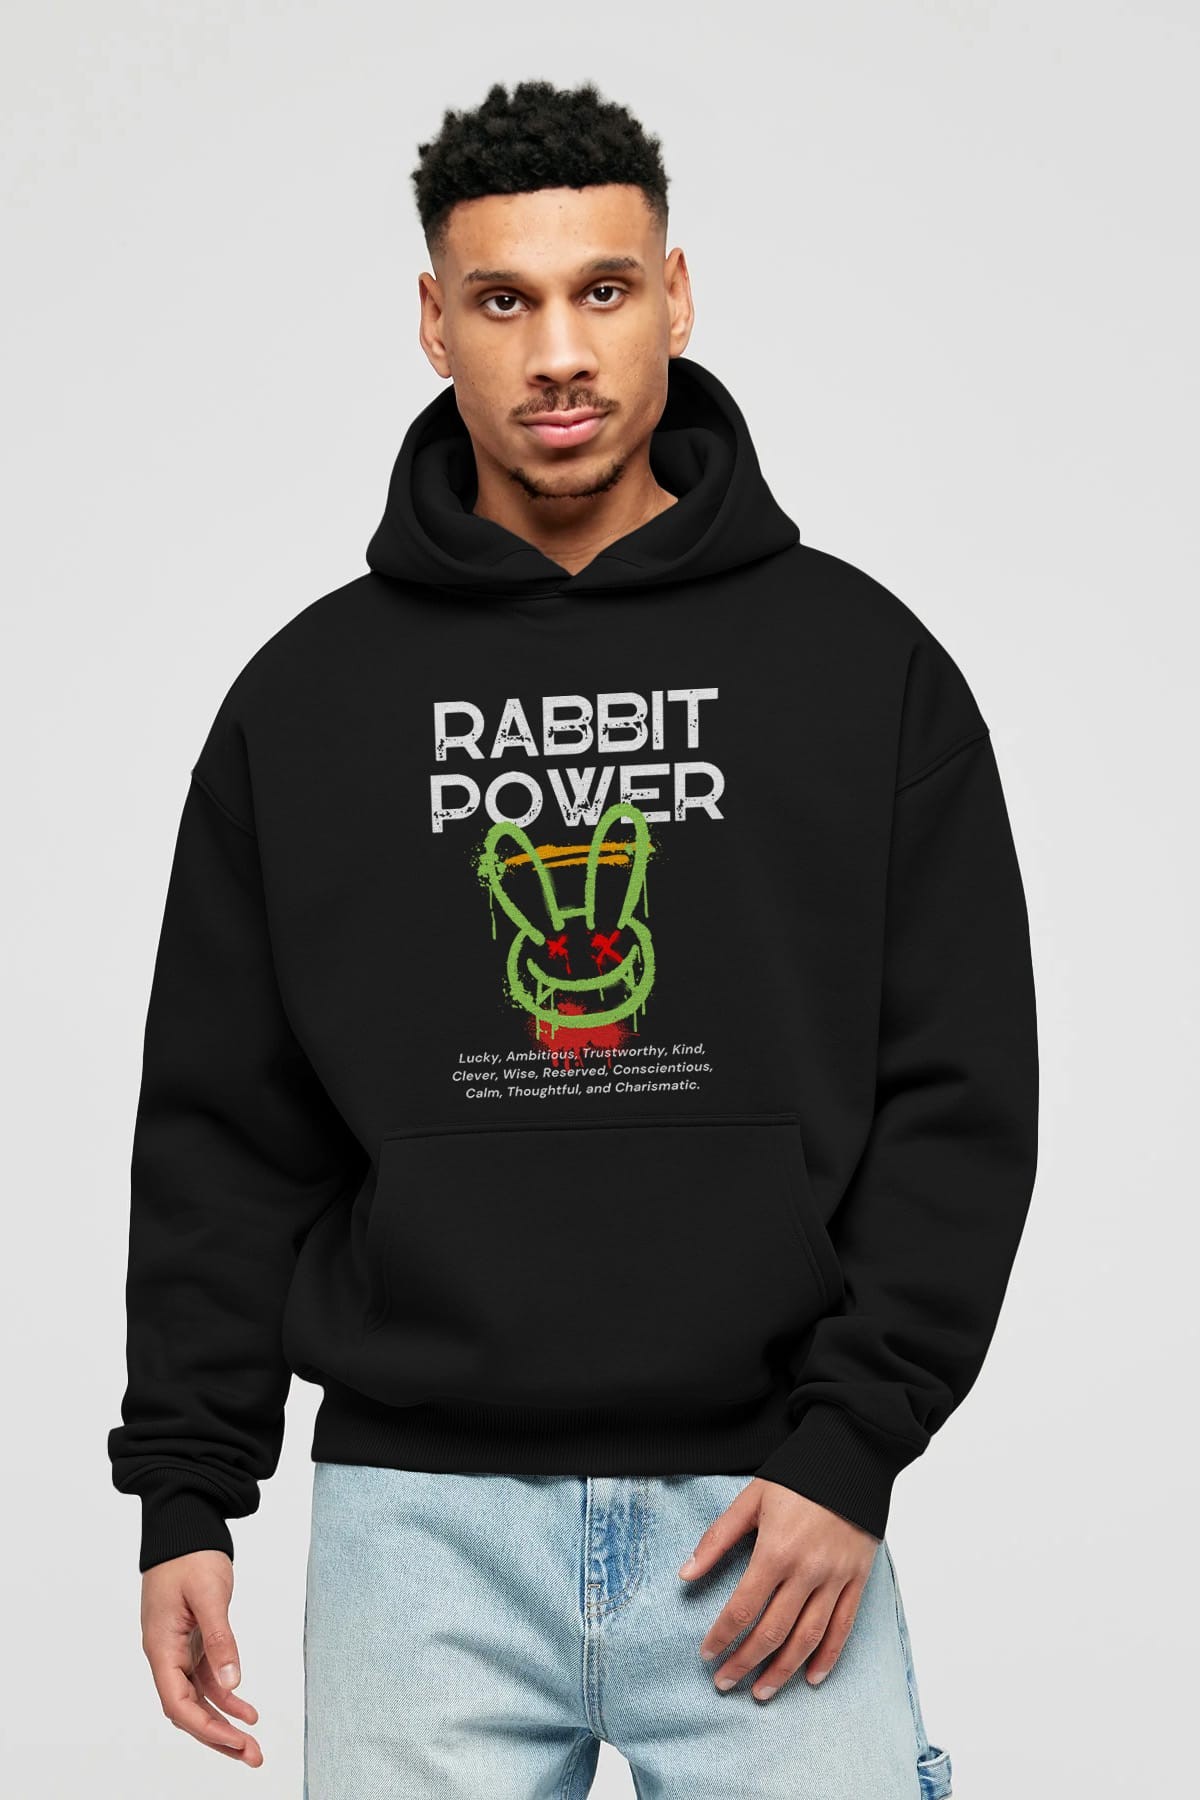 Rabbit Power Yazılı Ön Baskılı Oversize Hoodie Kapüşonlu Sweatshirt Erkek Kadın Unisex